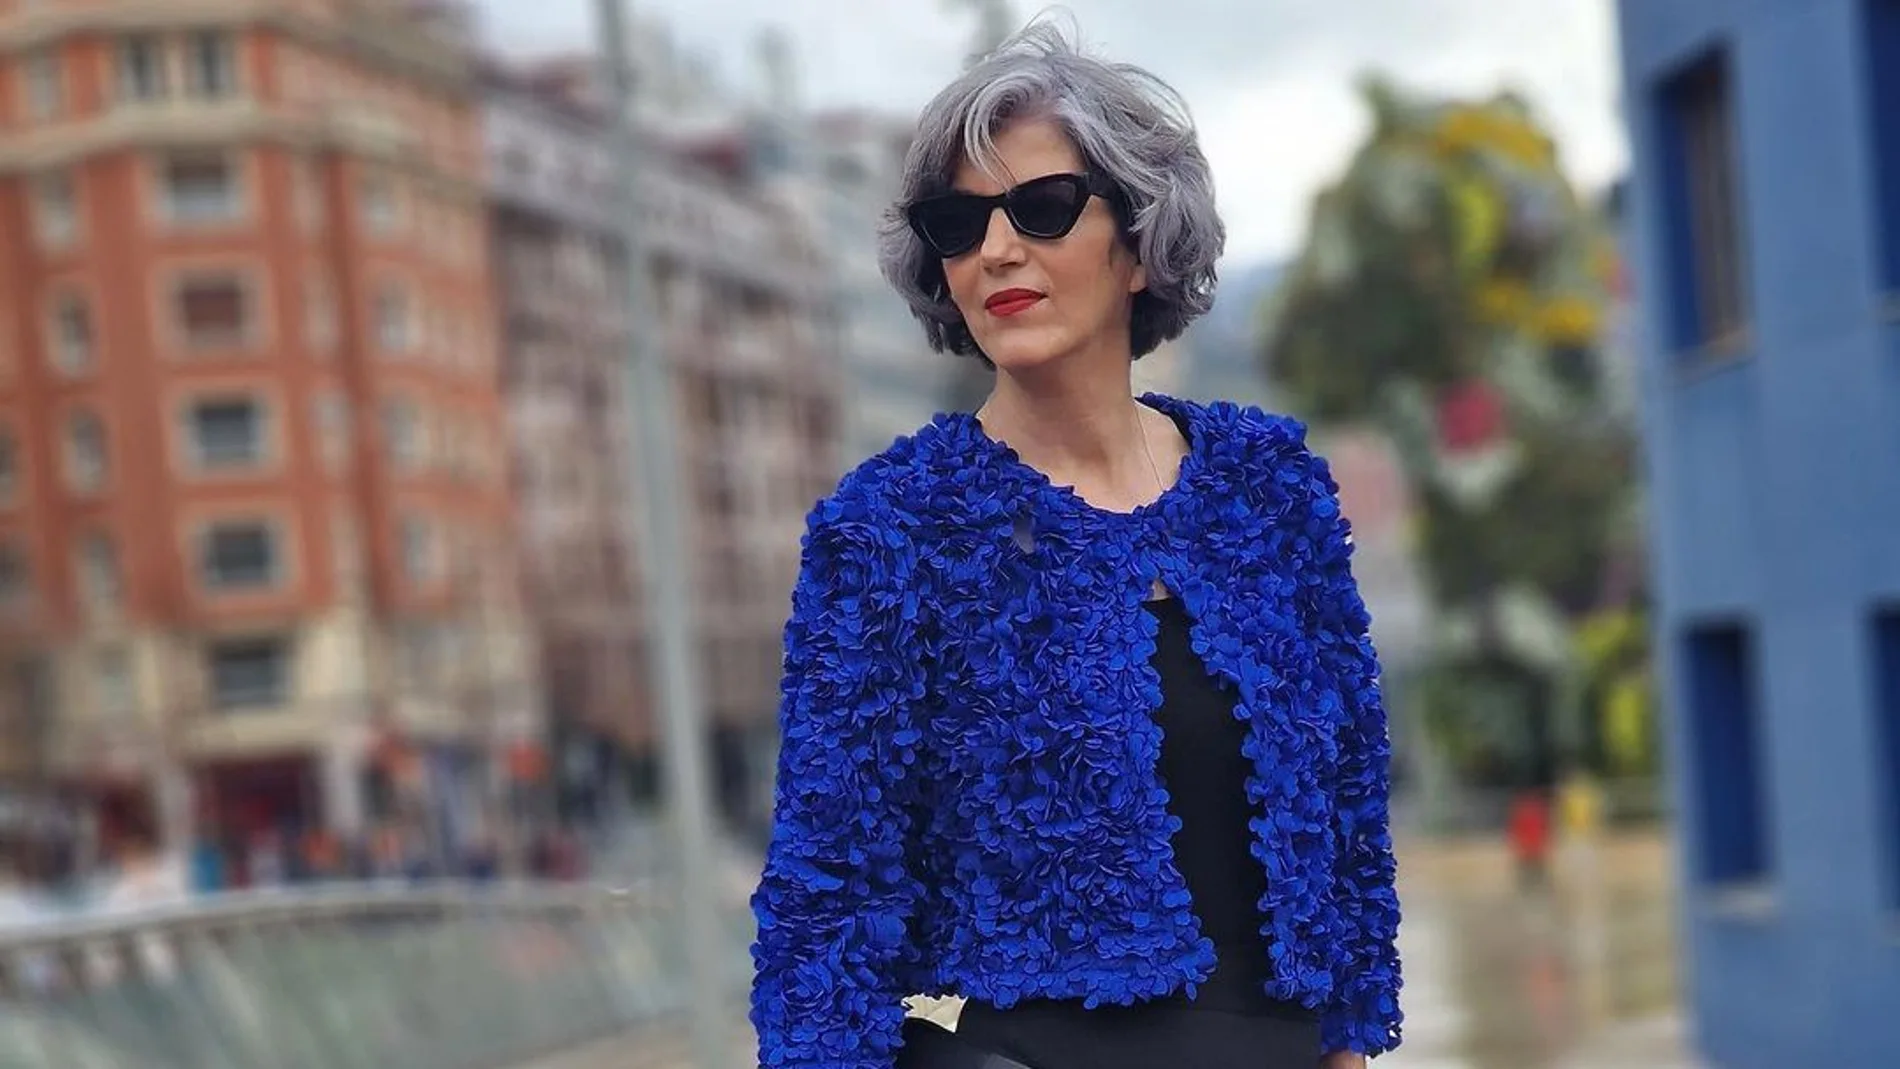 No pruebas, pero tampoco dudas de que chaqueta de flores de Zara se va a convertir en la estrella de la Semana Santa para las mujeres de 50 años